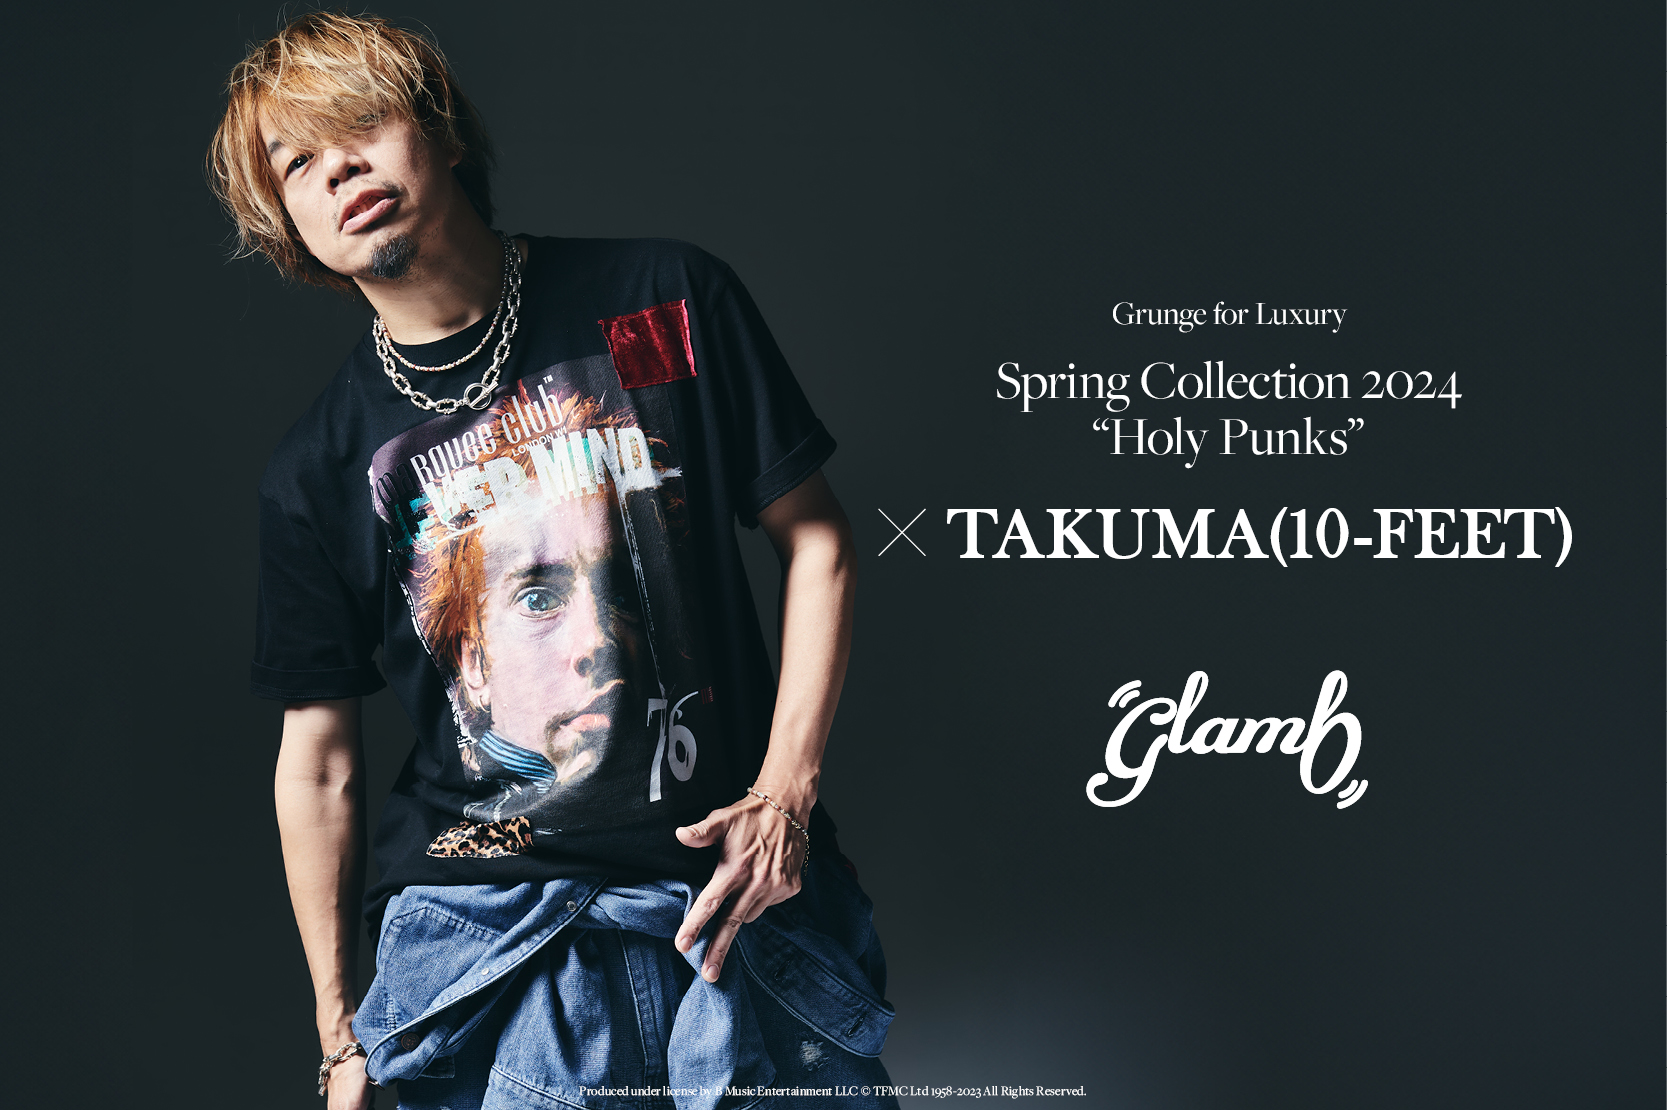 表紙掲載】Spring Collection 2024、10-FEET TAKUMAの登場が決定|glamb